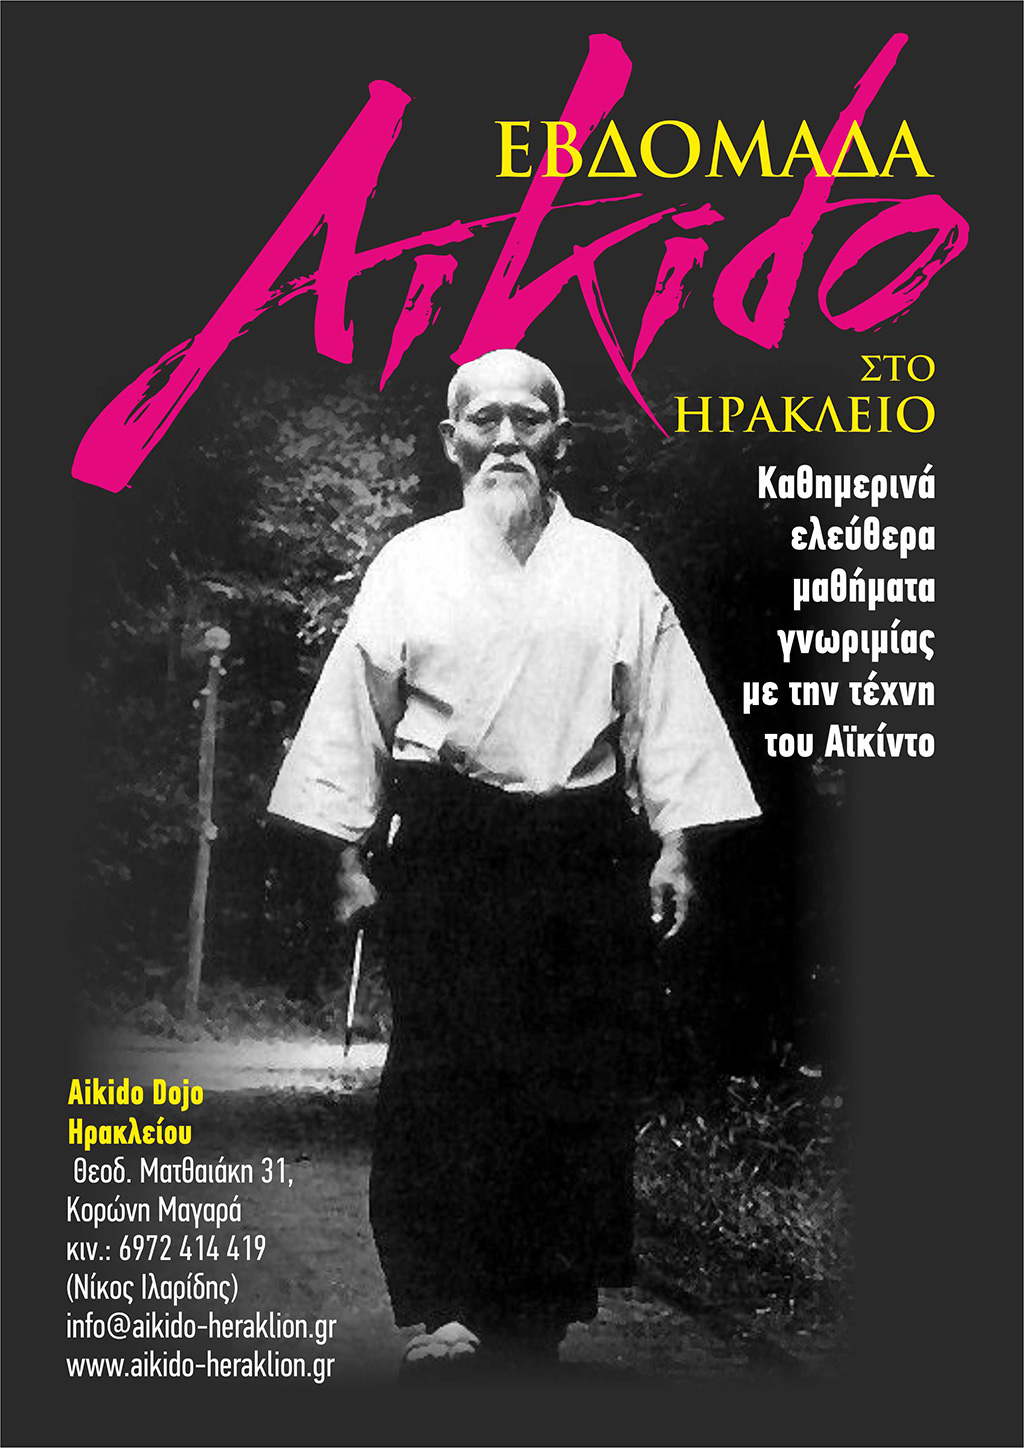 Aikido - Aiado - Heraklion Center